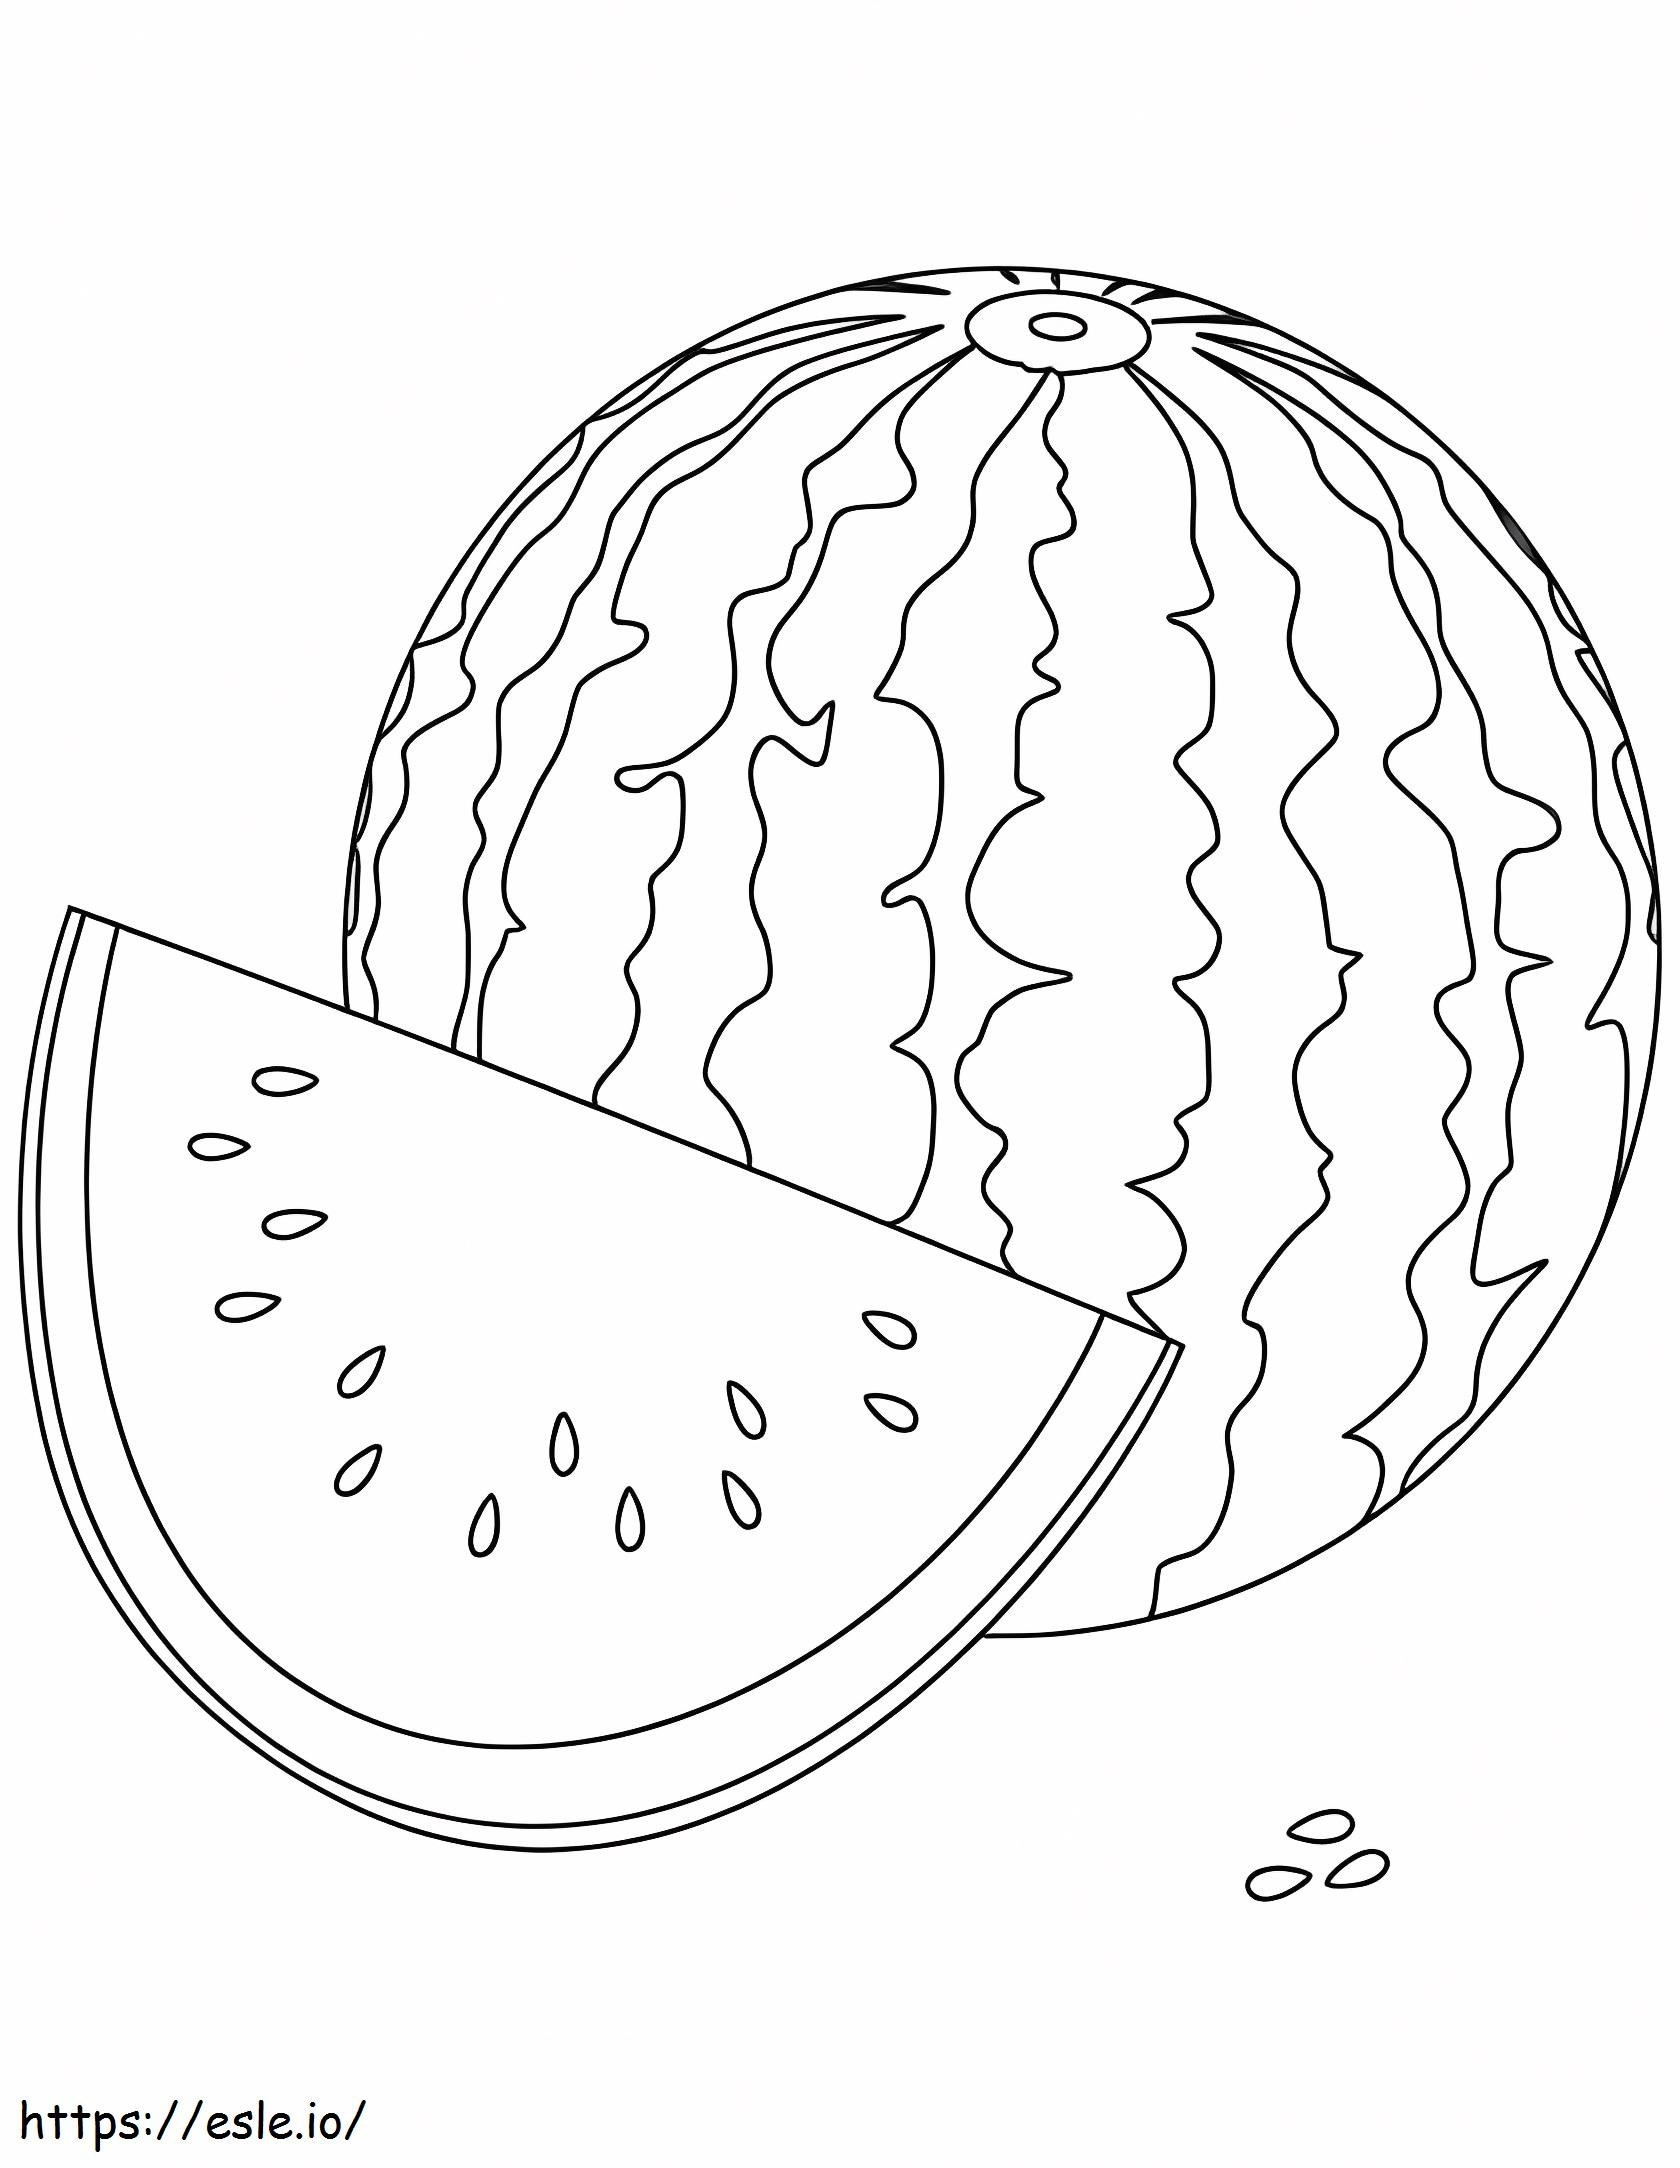 Eine Wassermelone und eine Scheibe Wassermelone ausmalbilder